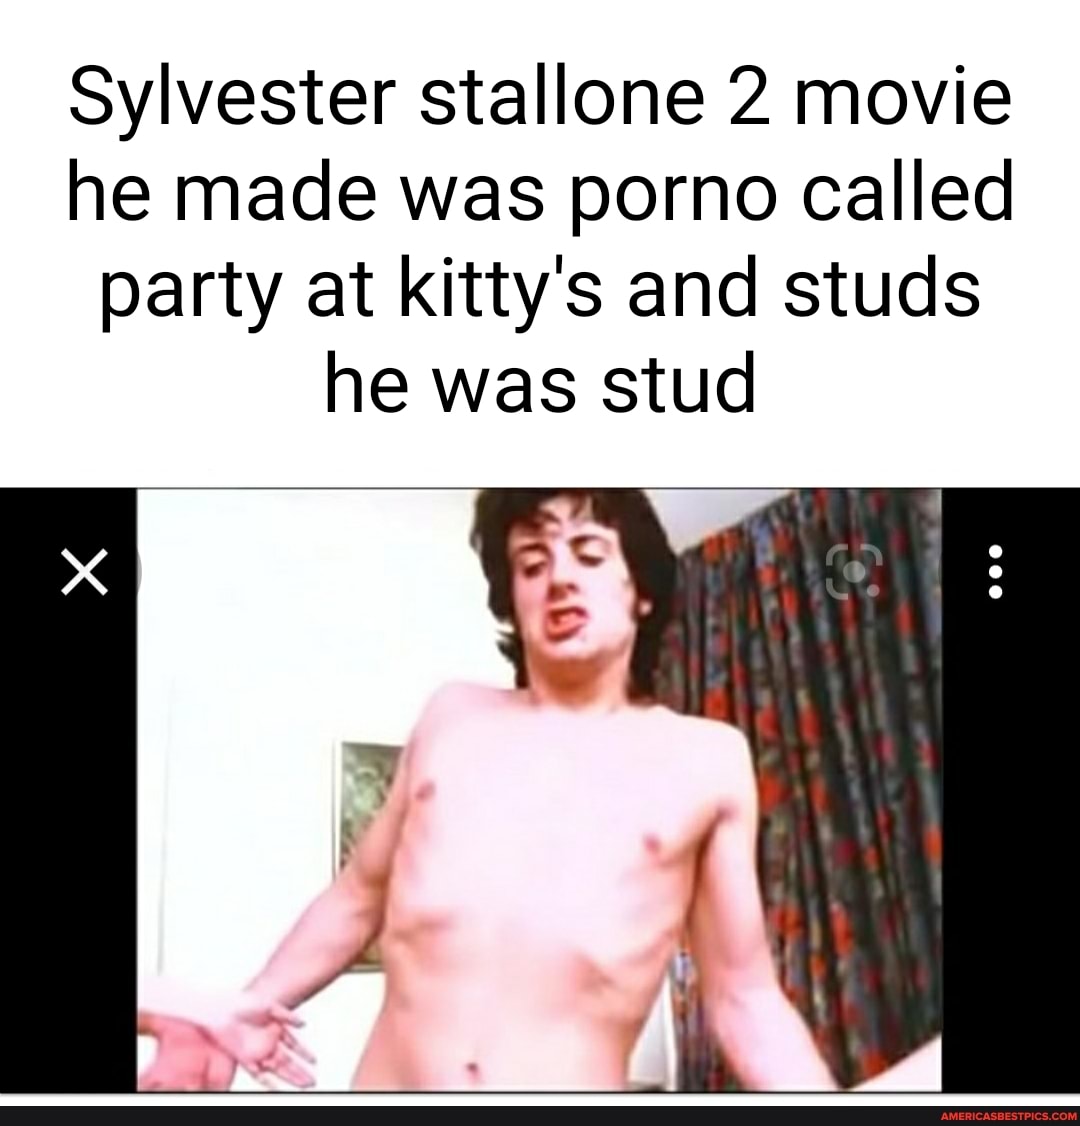 Silvester stallone porno